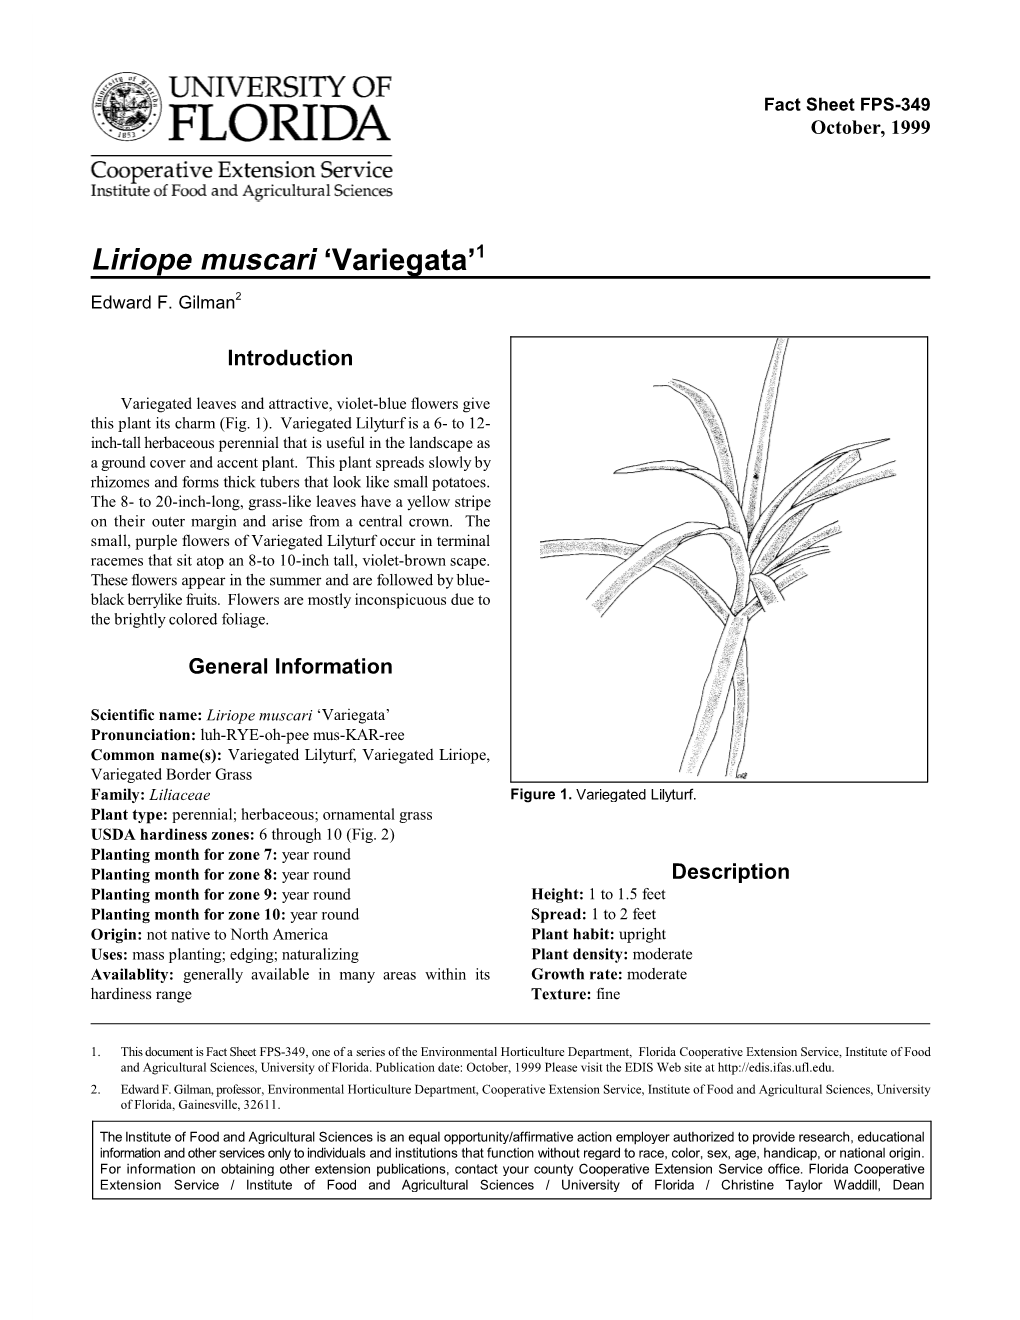 Lilyturf, Variegated (Liriope Muscari 'Variegata')